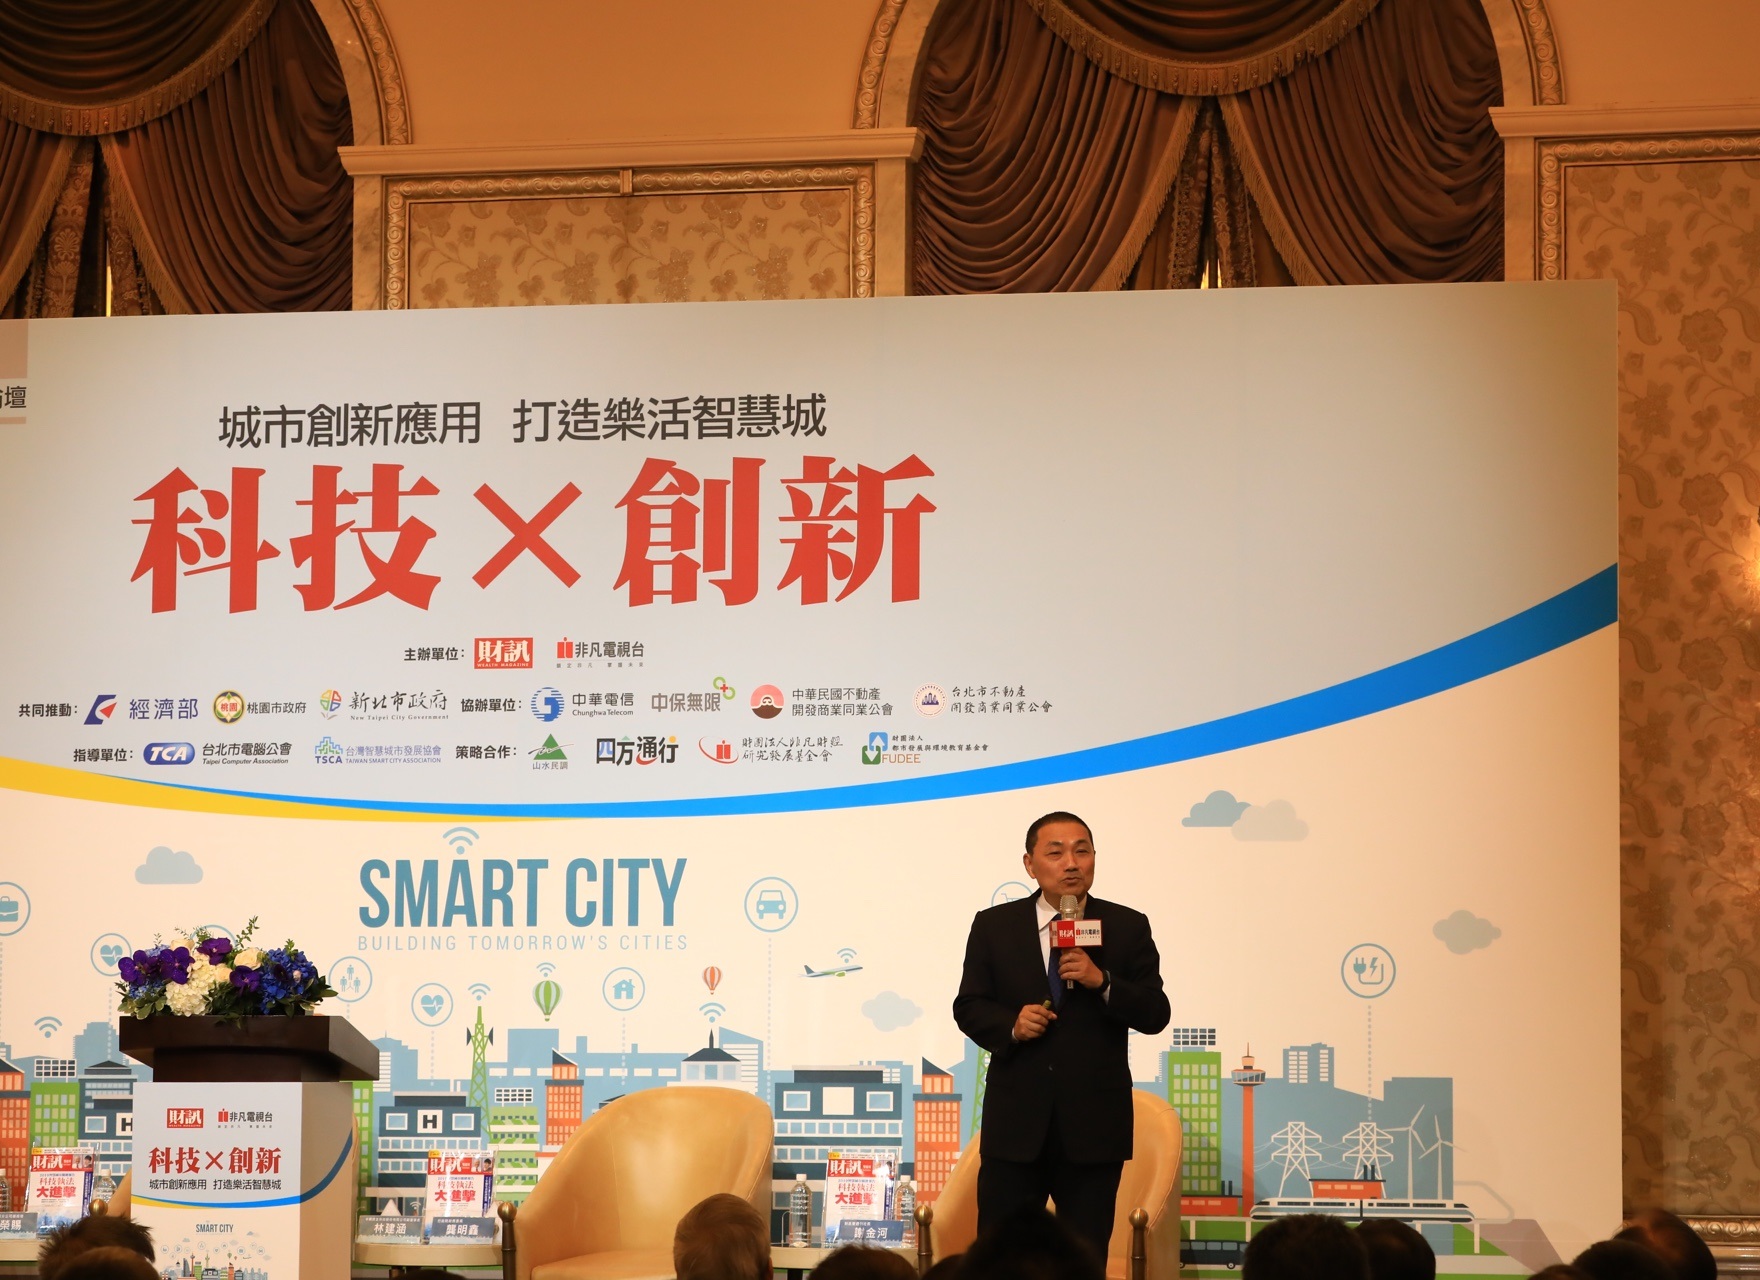 侯市長出席2019智慧城市新經濟力論壇介紹新北市的智慧城市發展